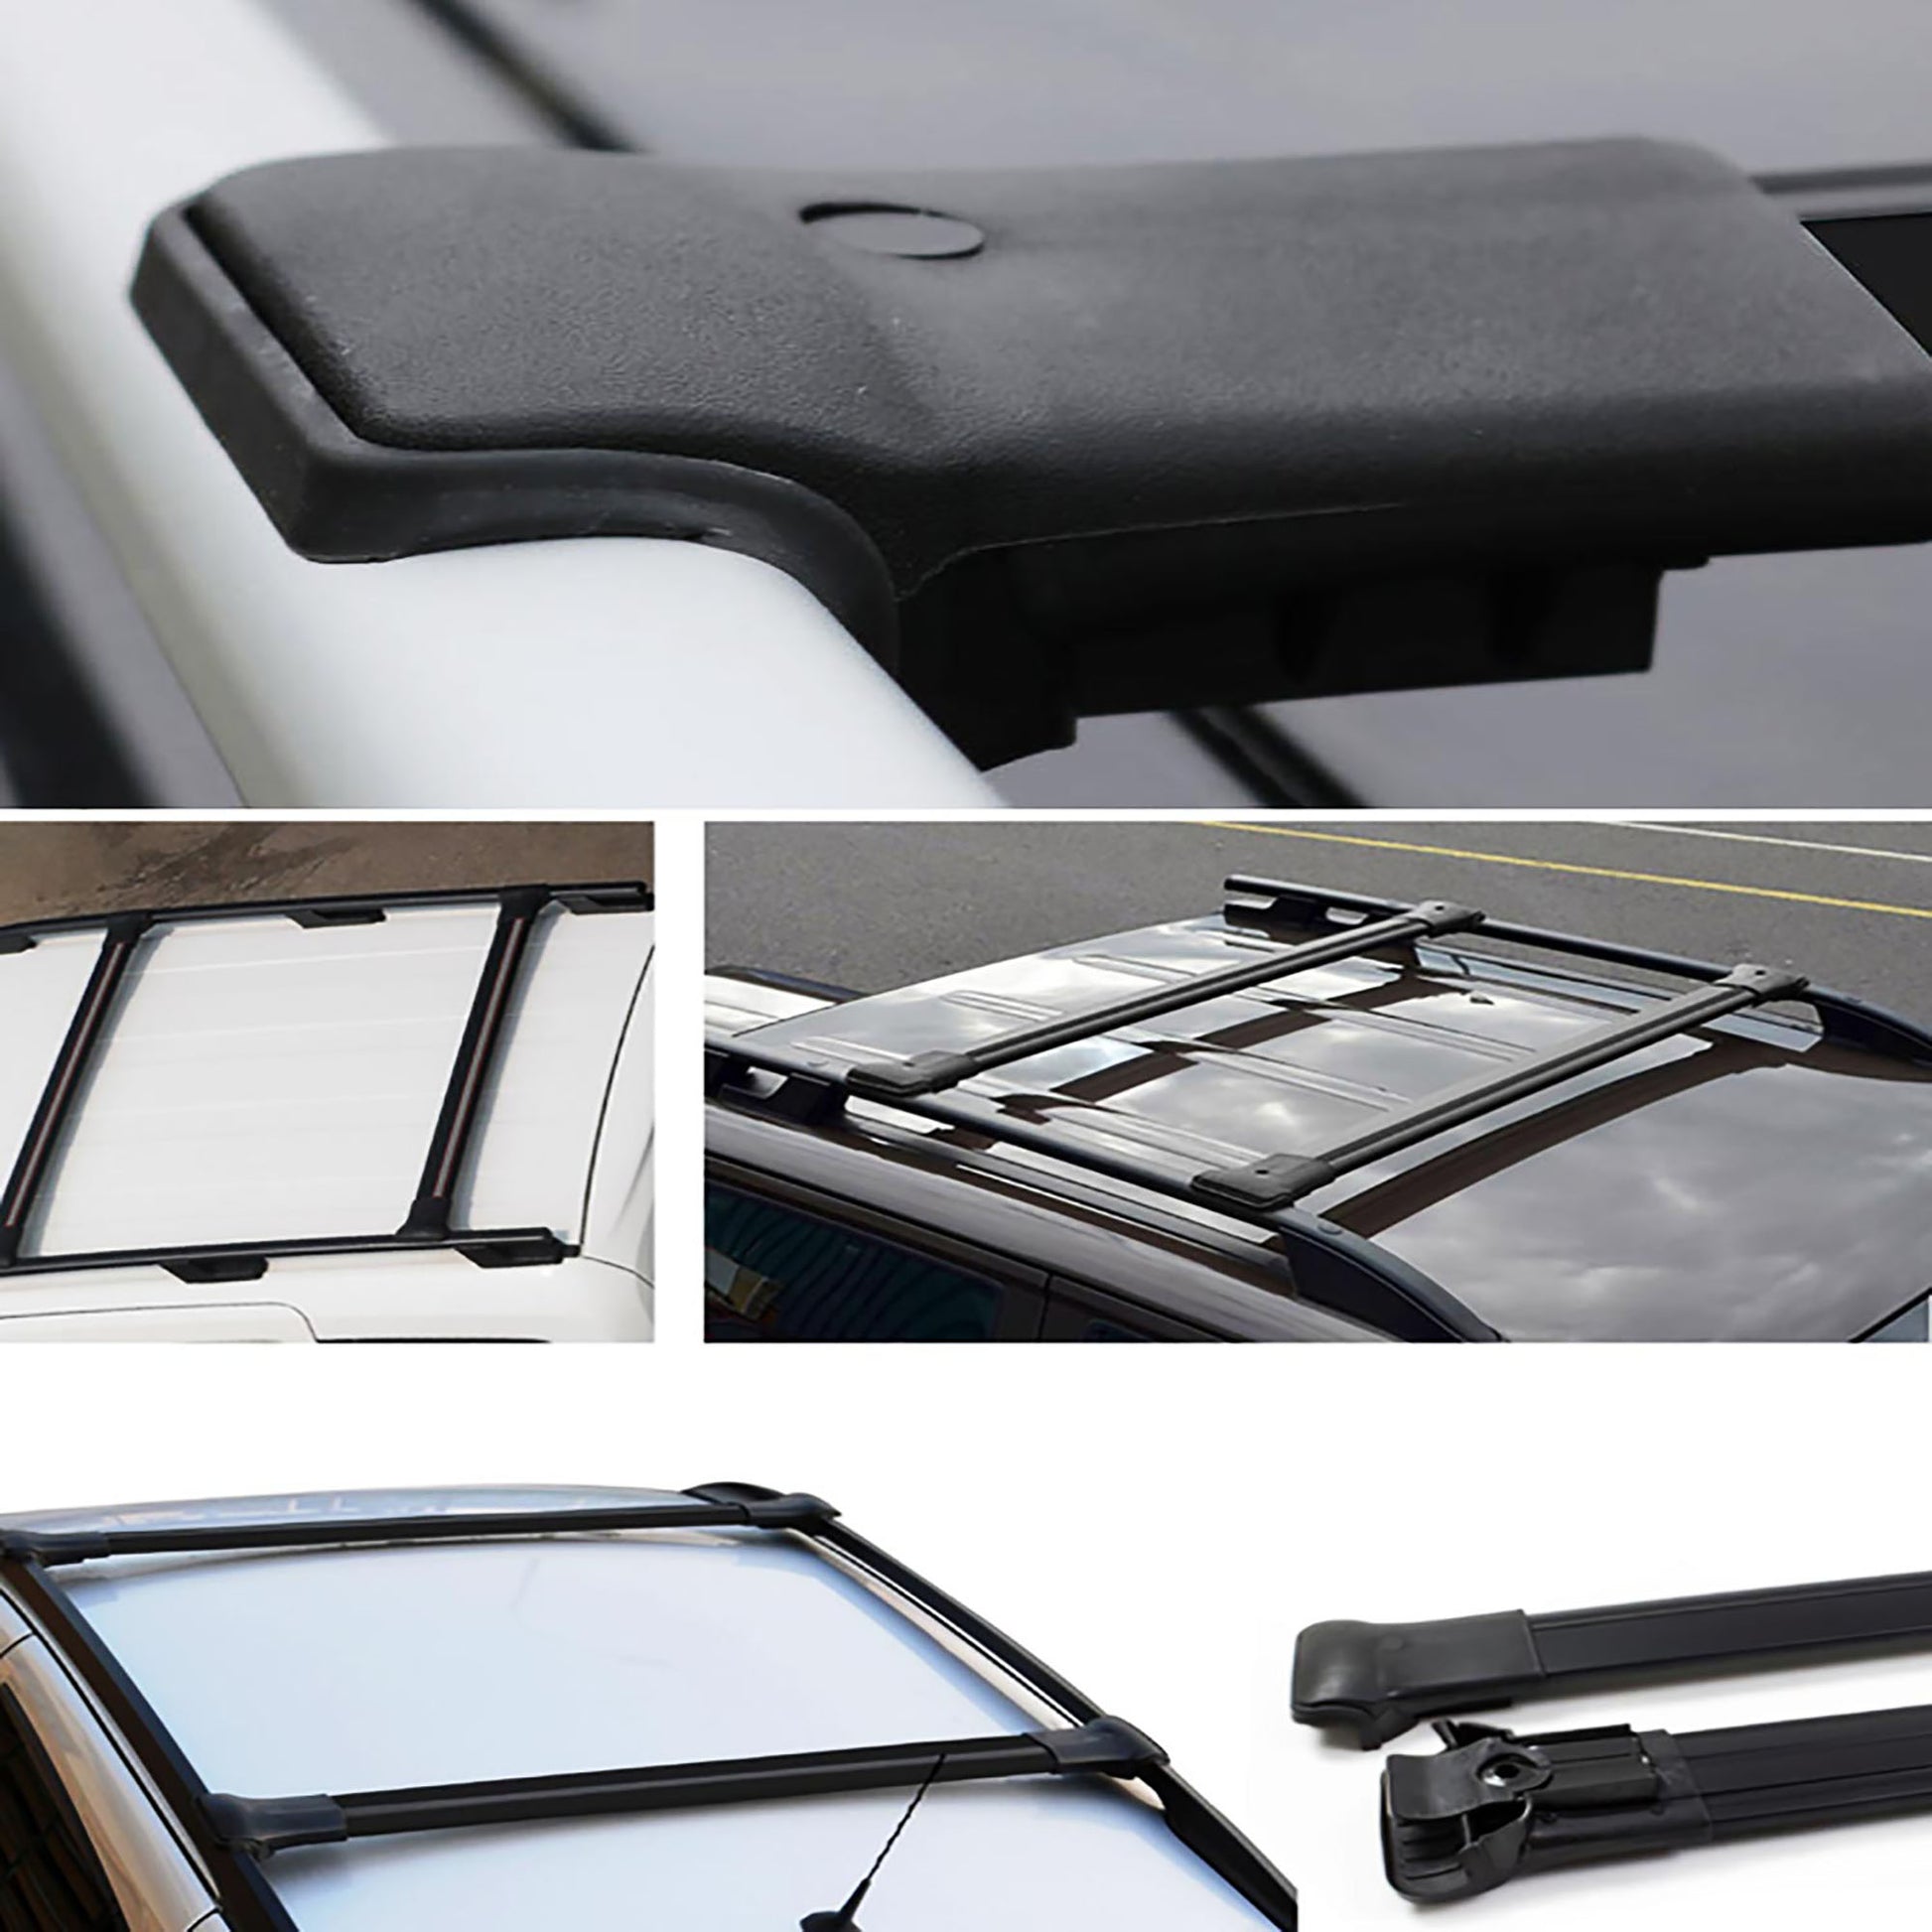 Ford Tourneo Connect Ara Atkı - Elegance V1 - Siyah Aksesuarları Detaylı Resimleri, Kampanya bilgileri ve fiyatı - 4